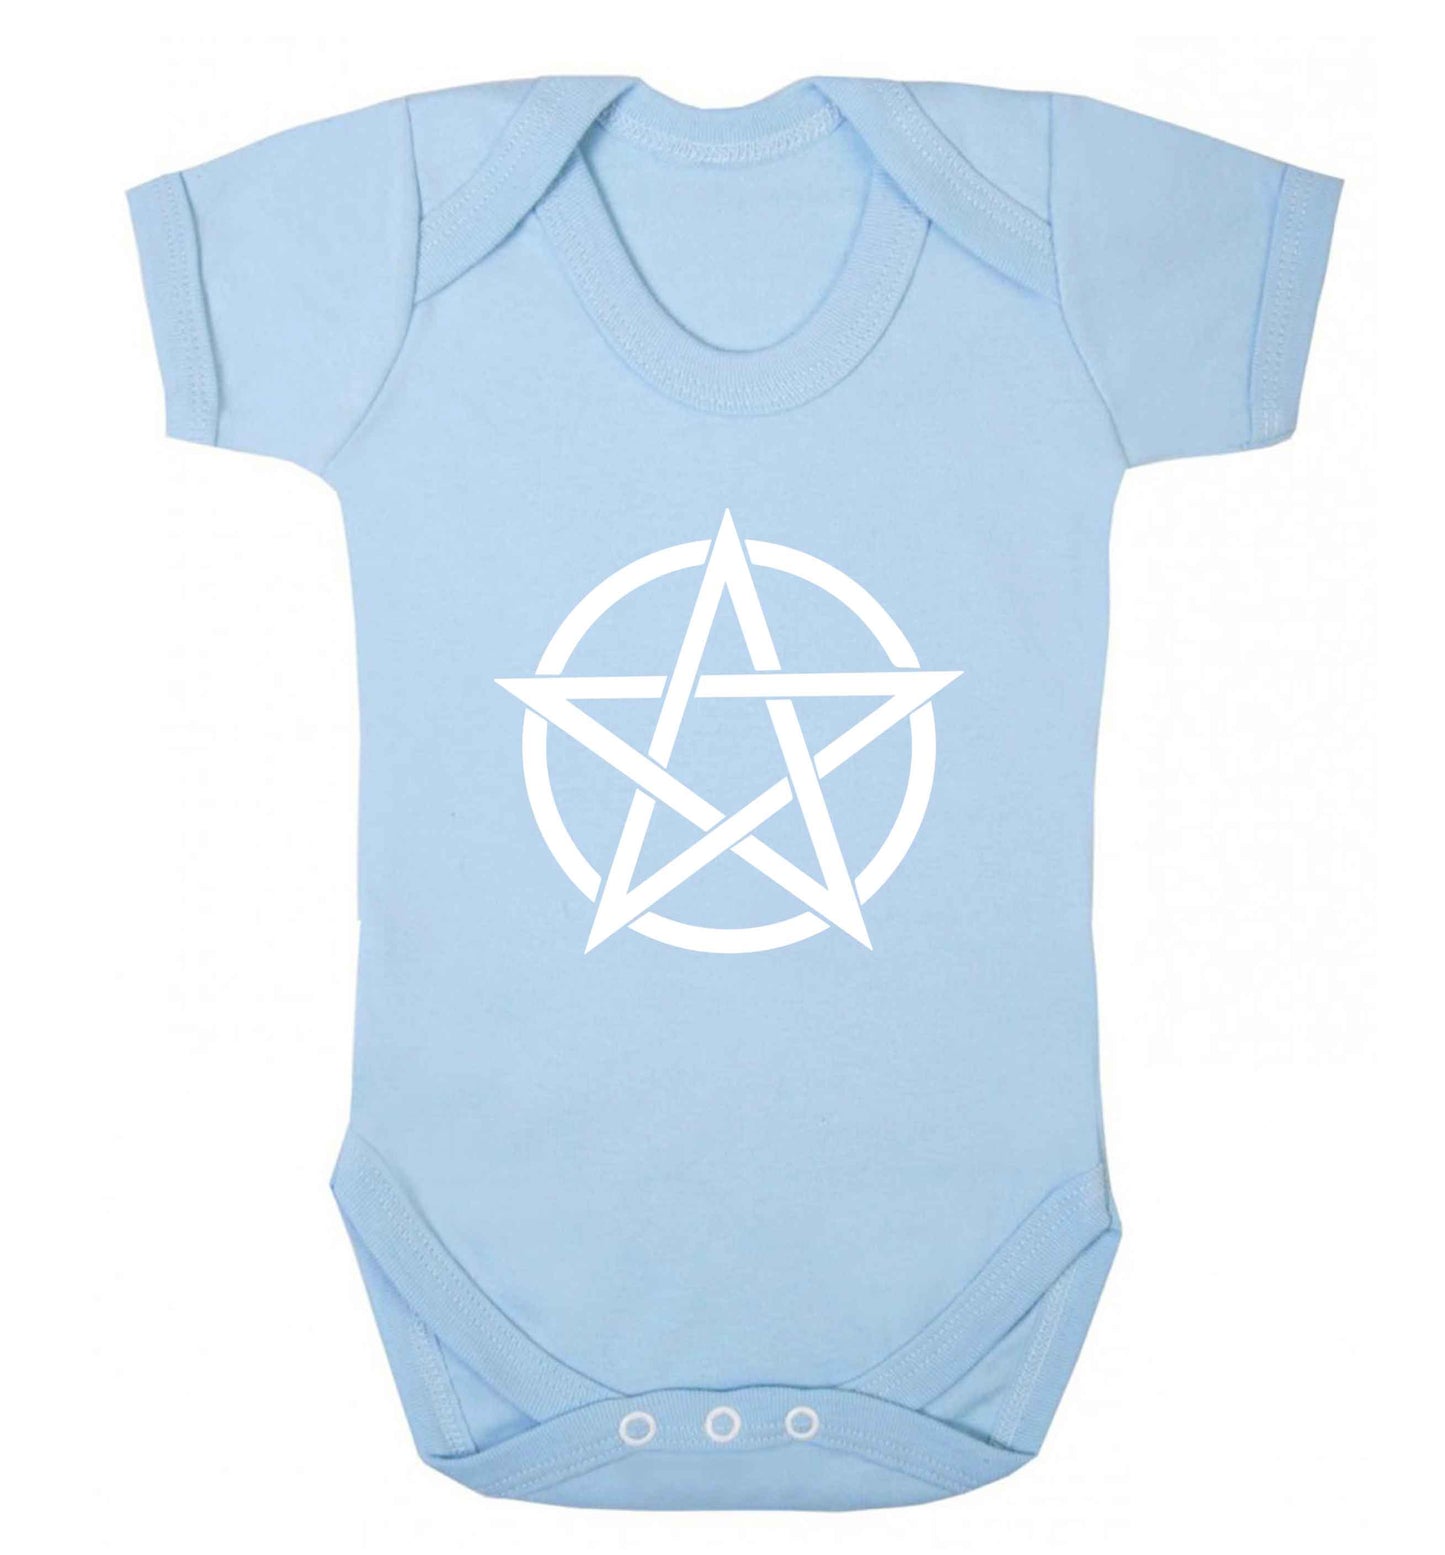 Pentagram symbol baby vest pale blue 18-24 months